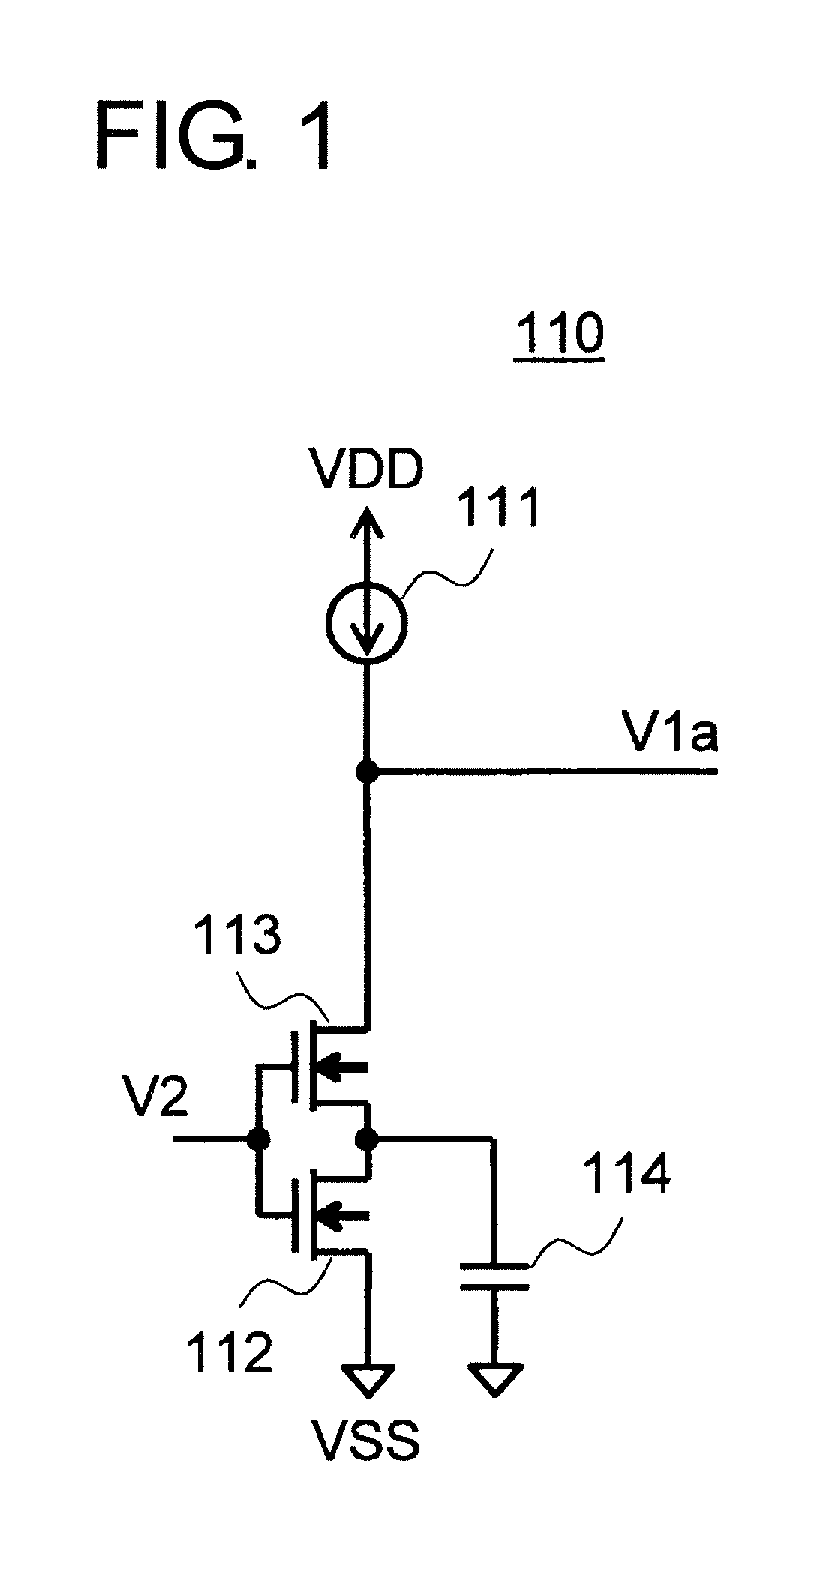 Amplifier circuit and voltage regulator